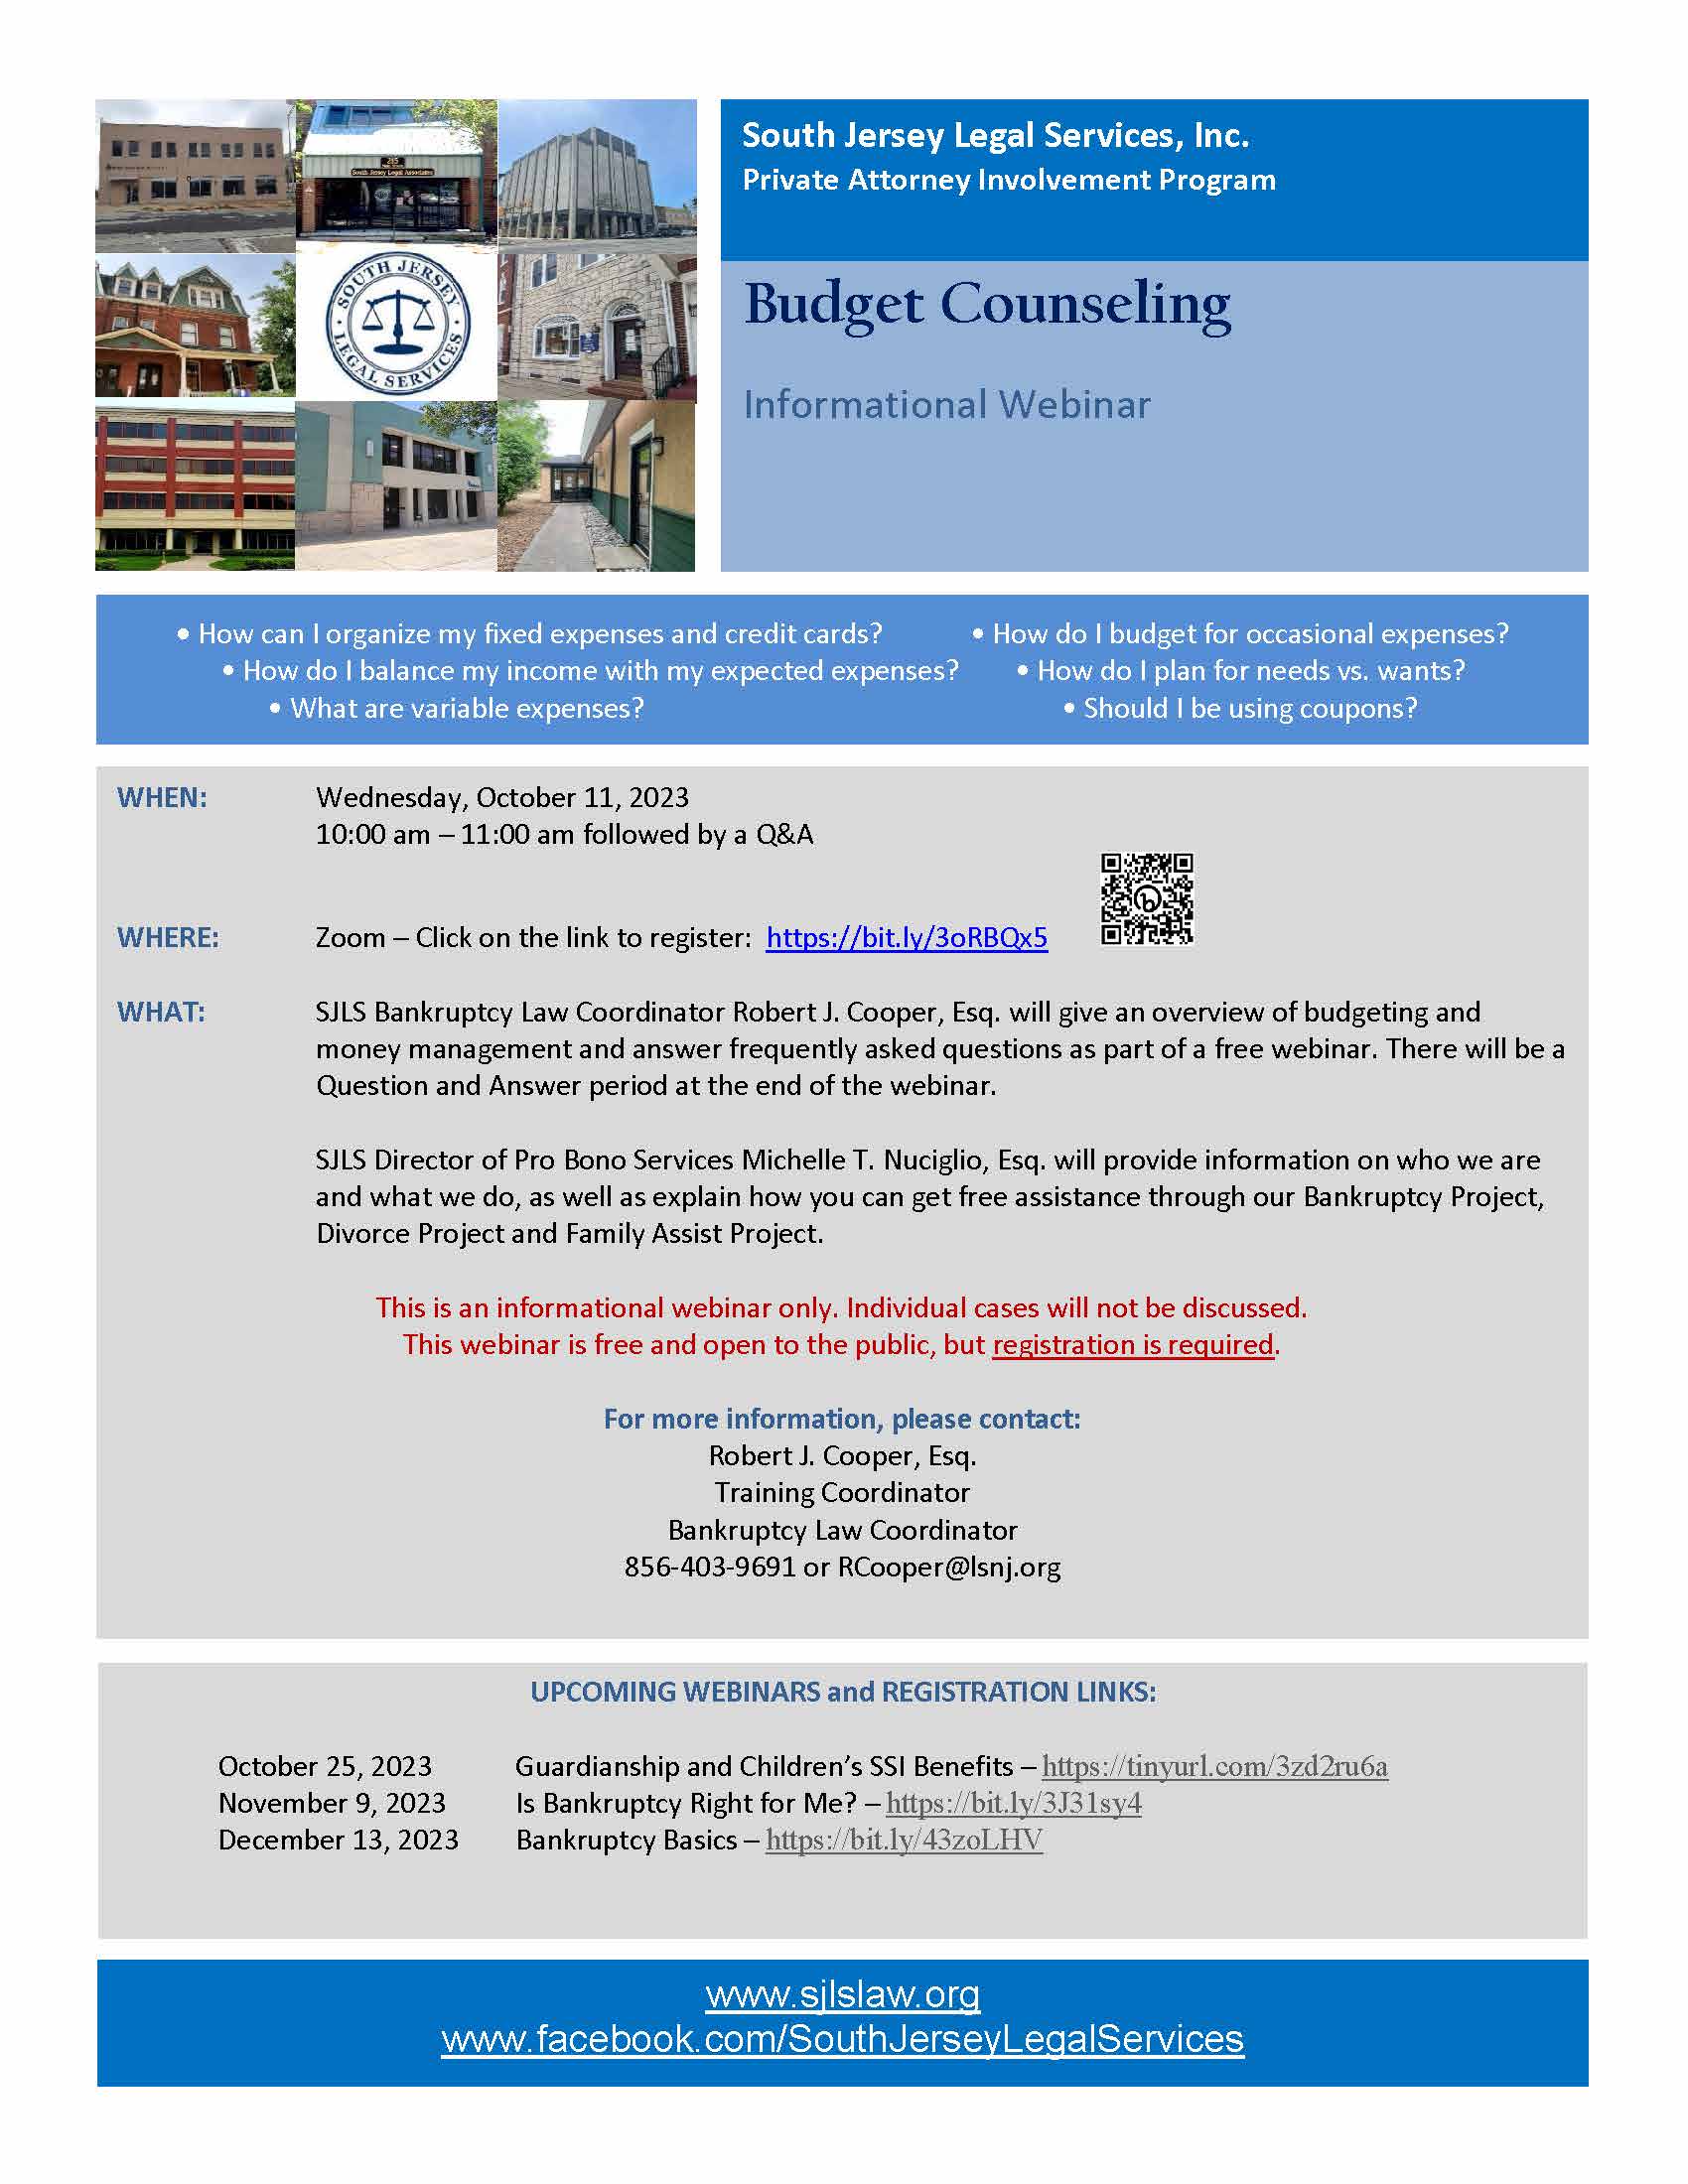 2023 Oct Budget Counseling Webinar Flyer